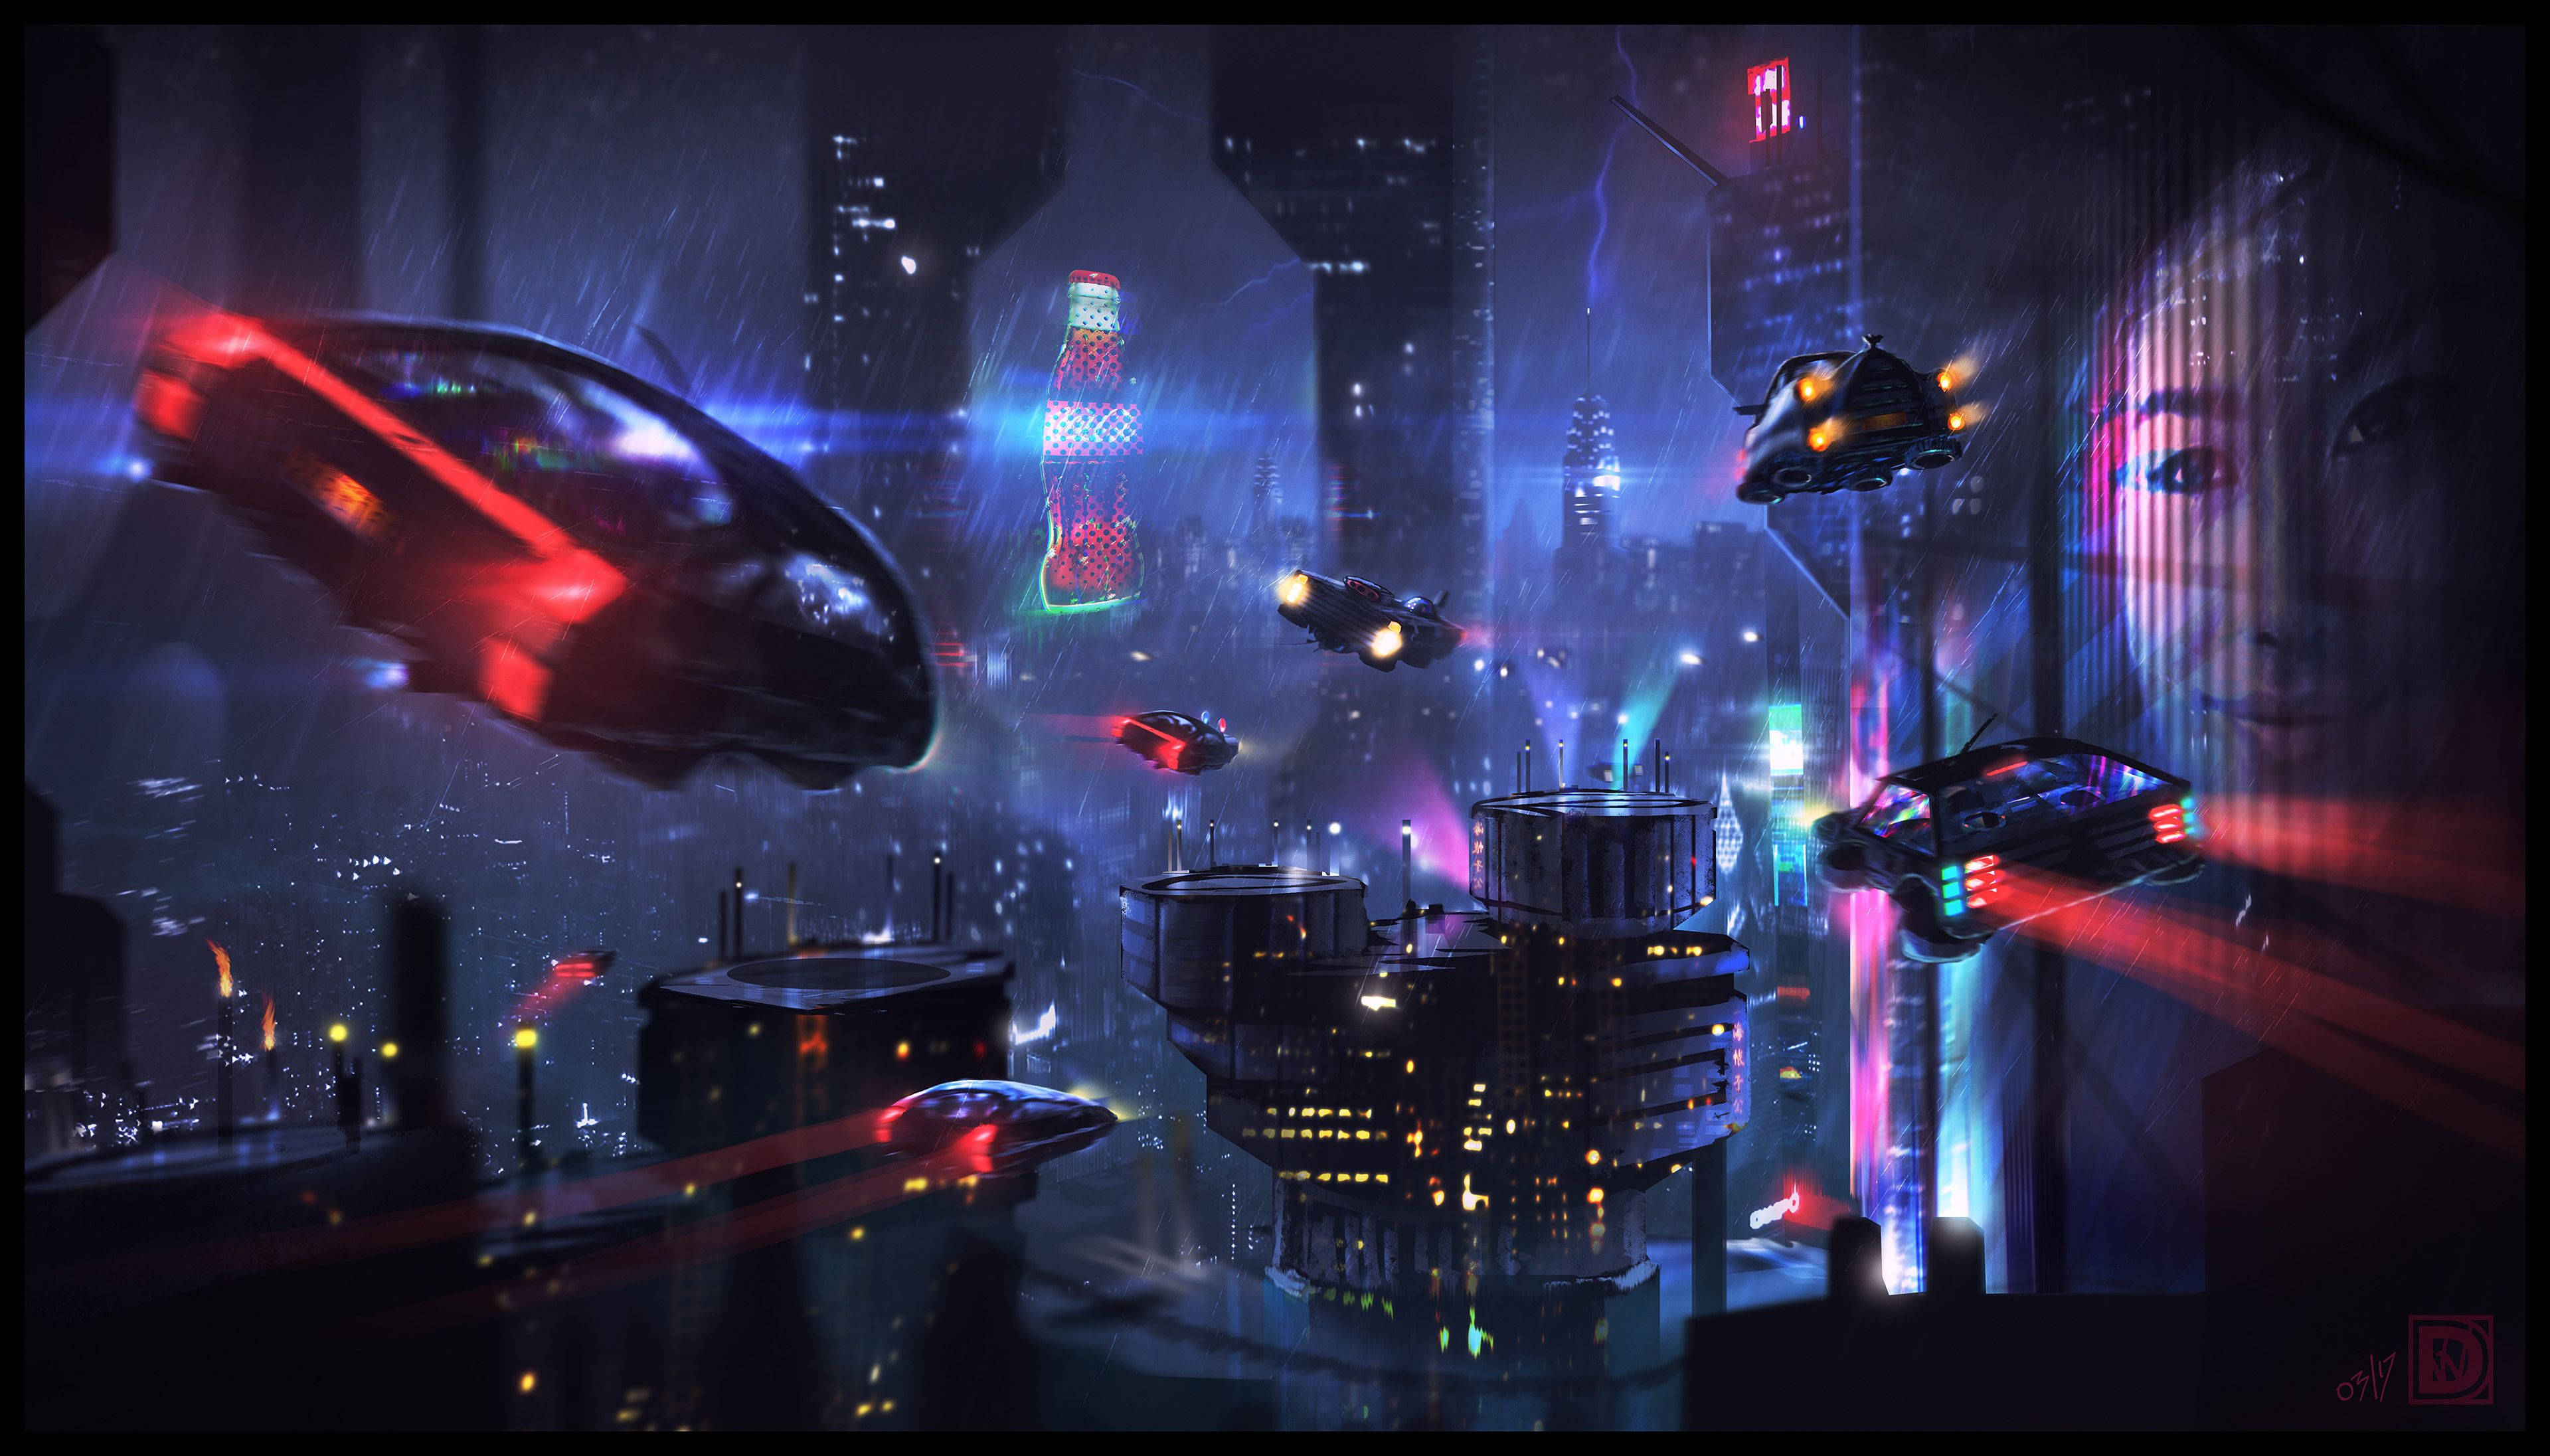 Download Blade Runner Cyberpunk Neon City Wallpaper | Wallpapers.com